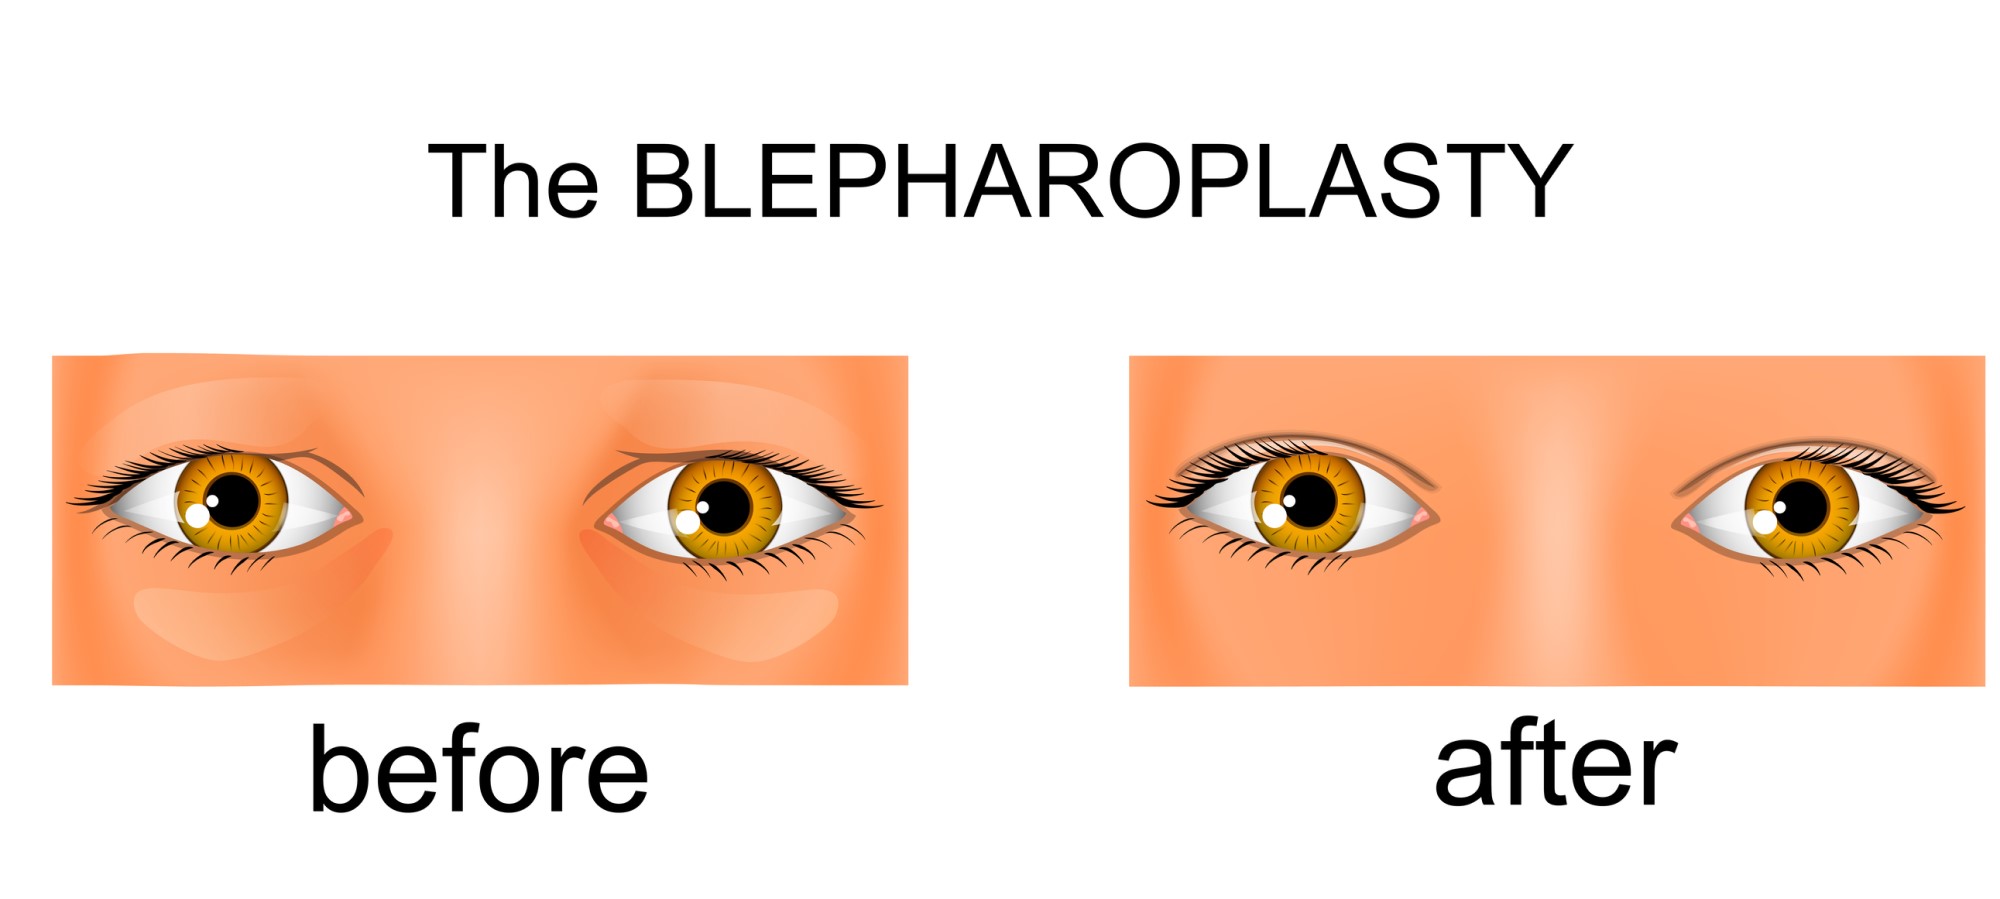 Какая блефаропластика лучше: лазерная или хирургическая?